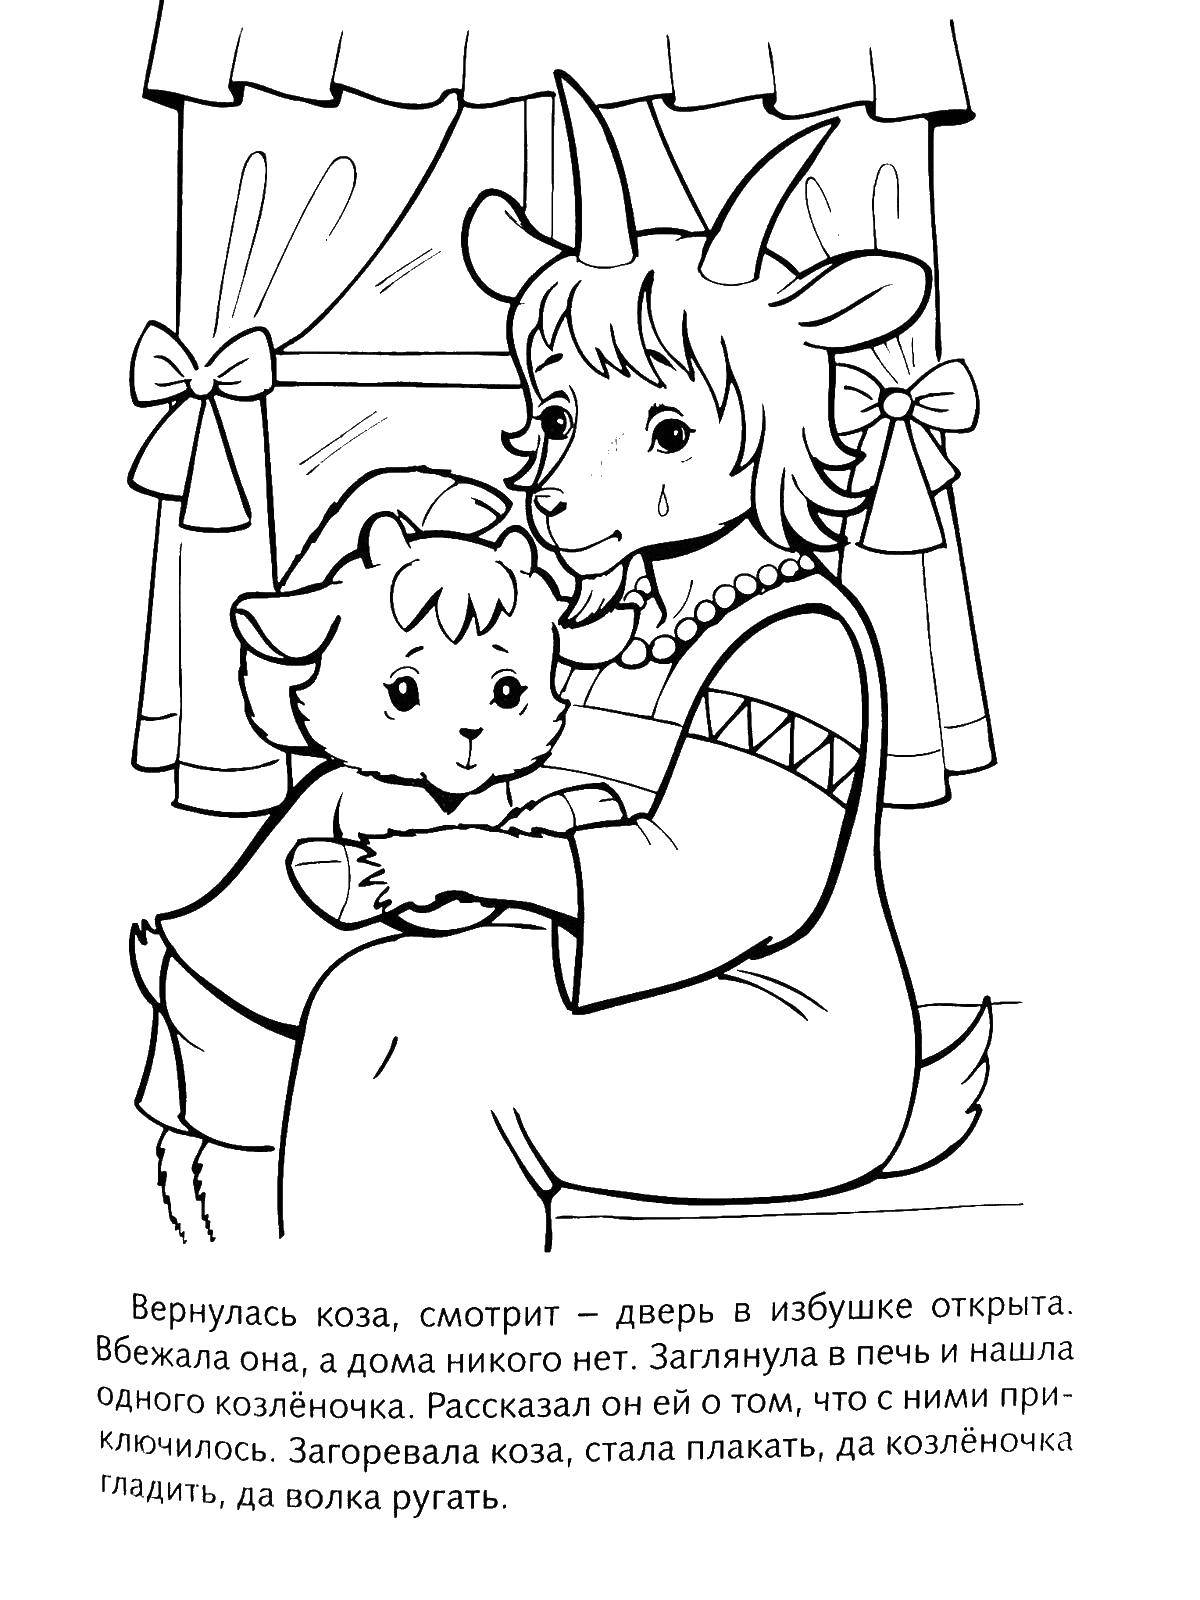 Раскраска козы и козленка для детей (коза, козленок)